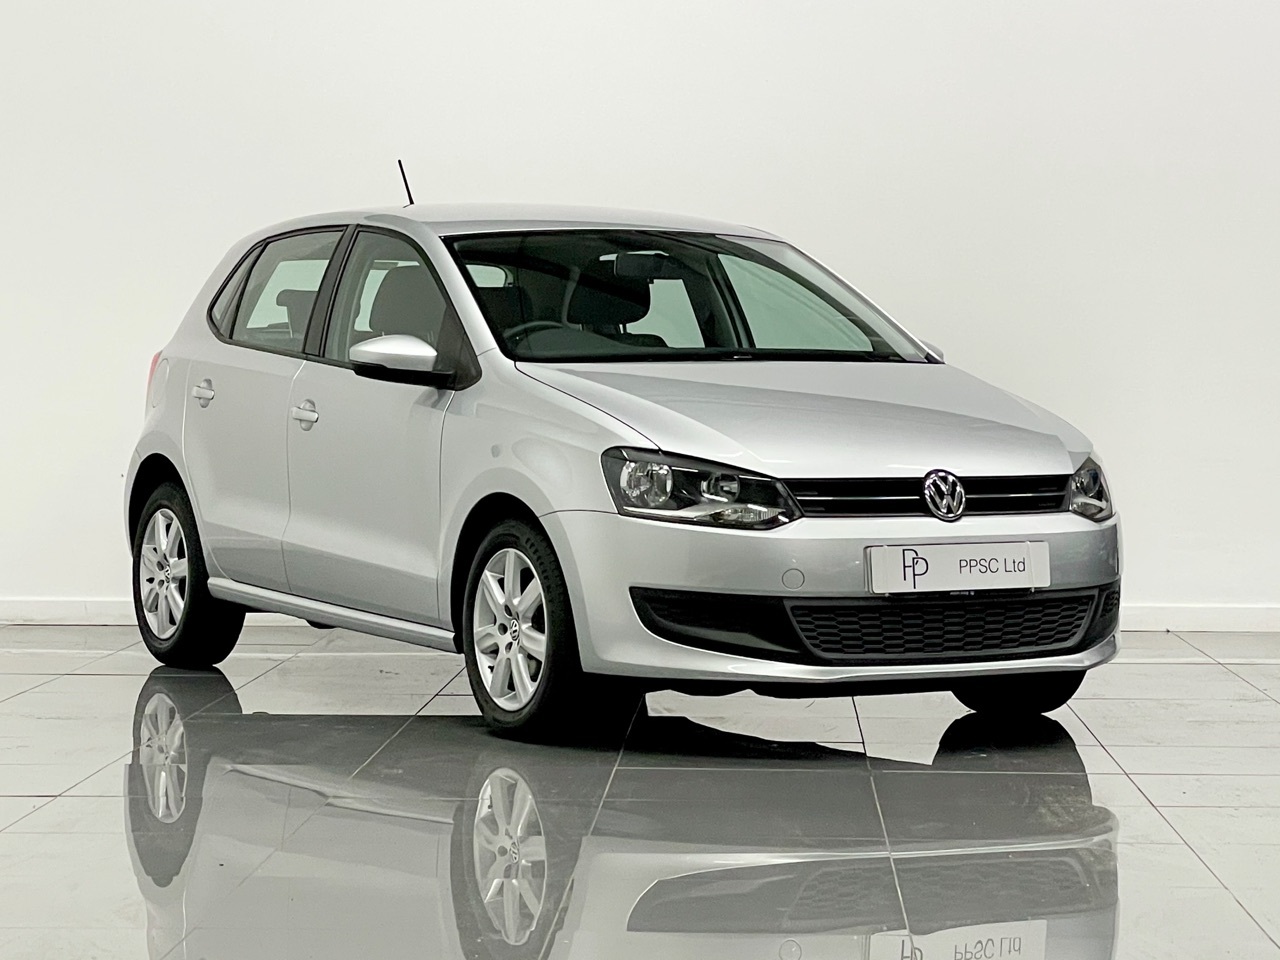 2010 Volkswagen Polo